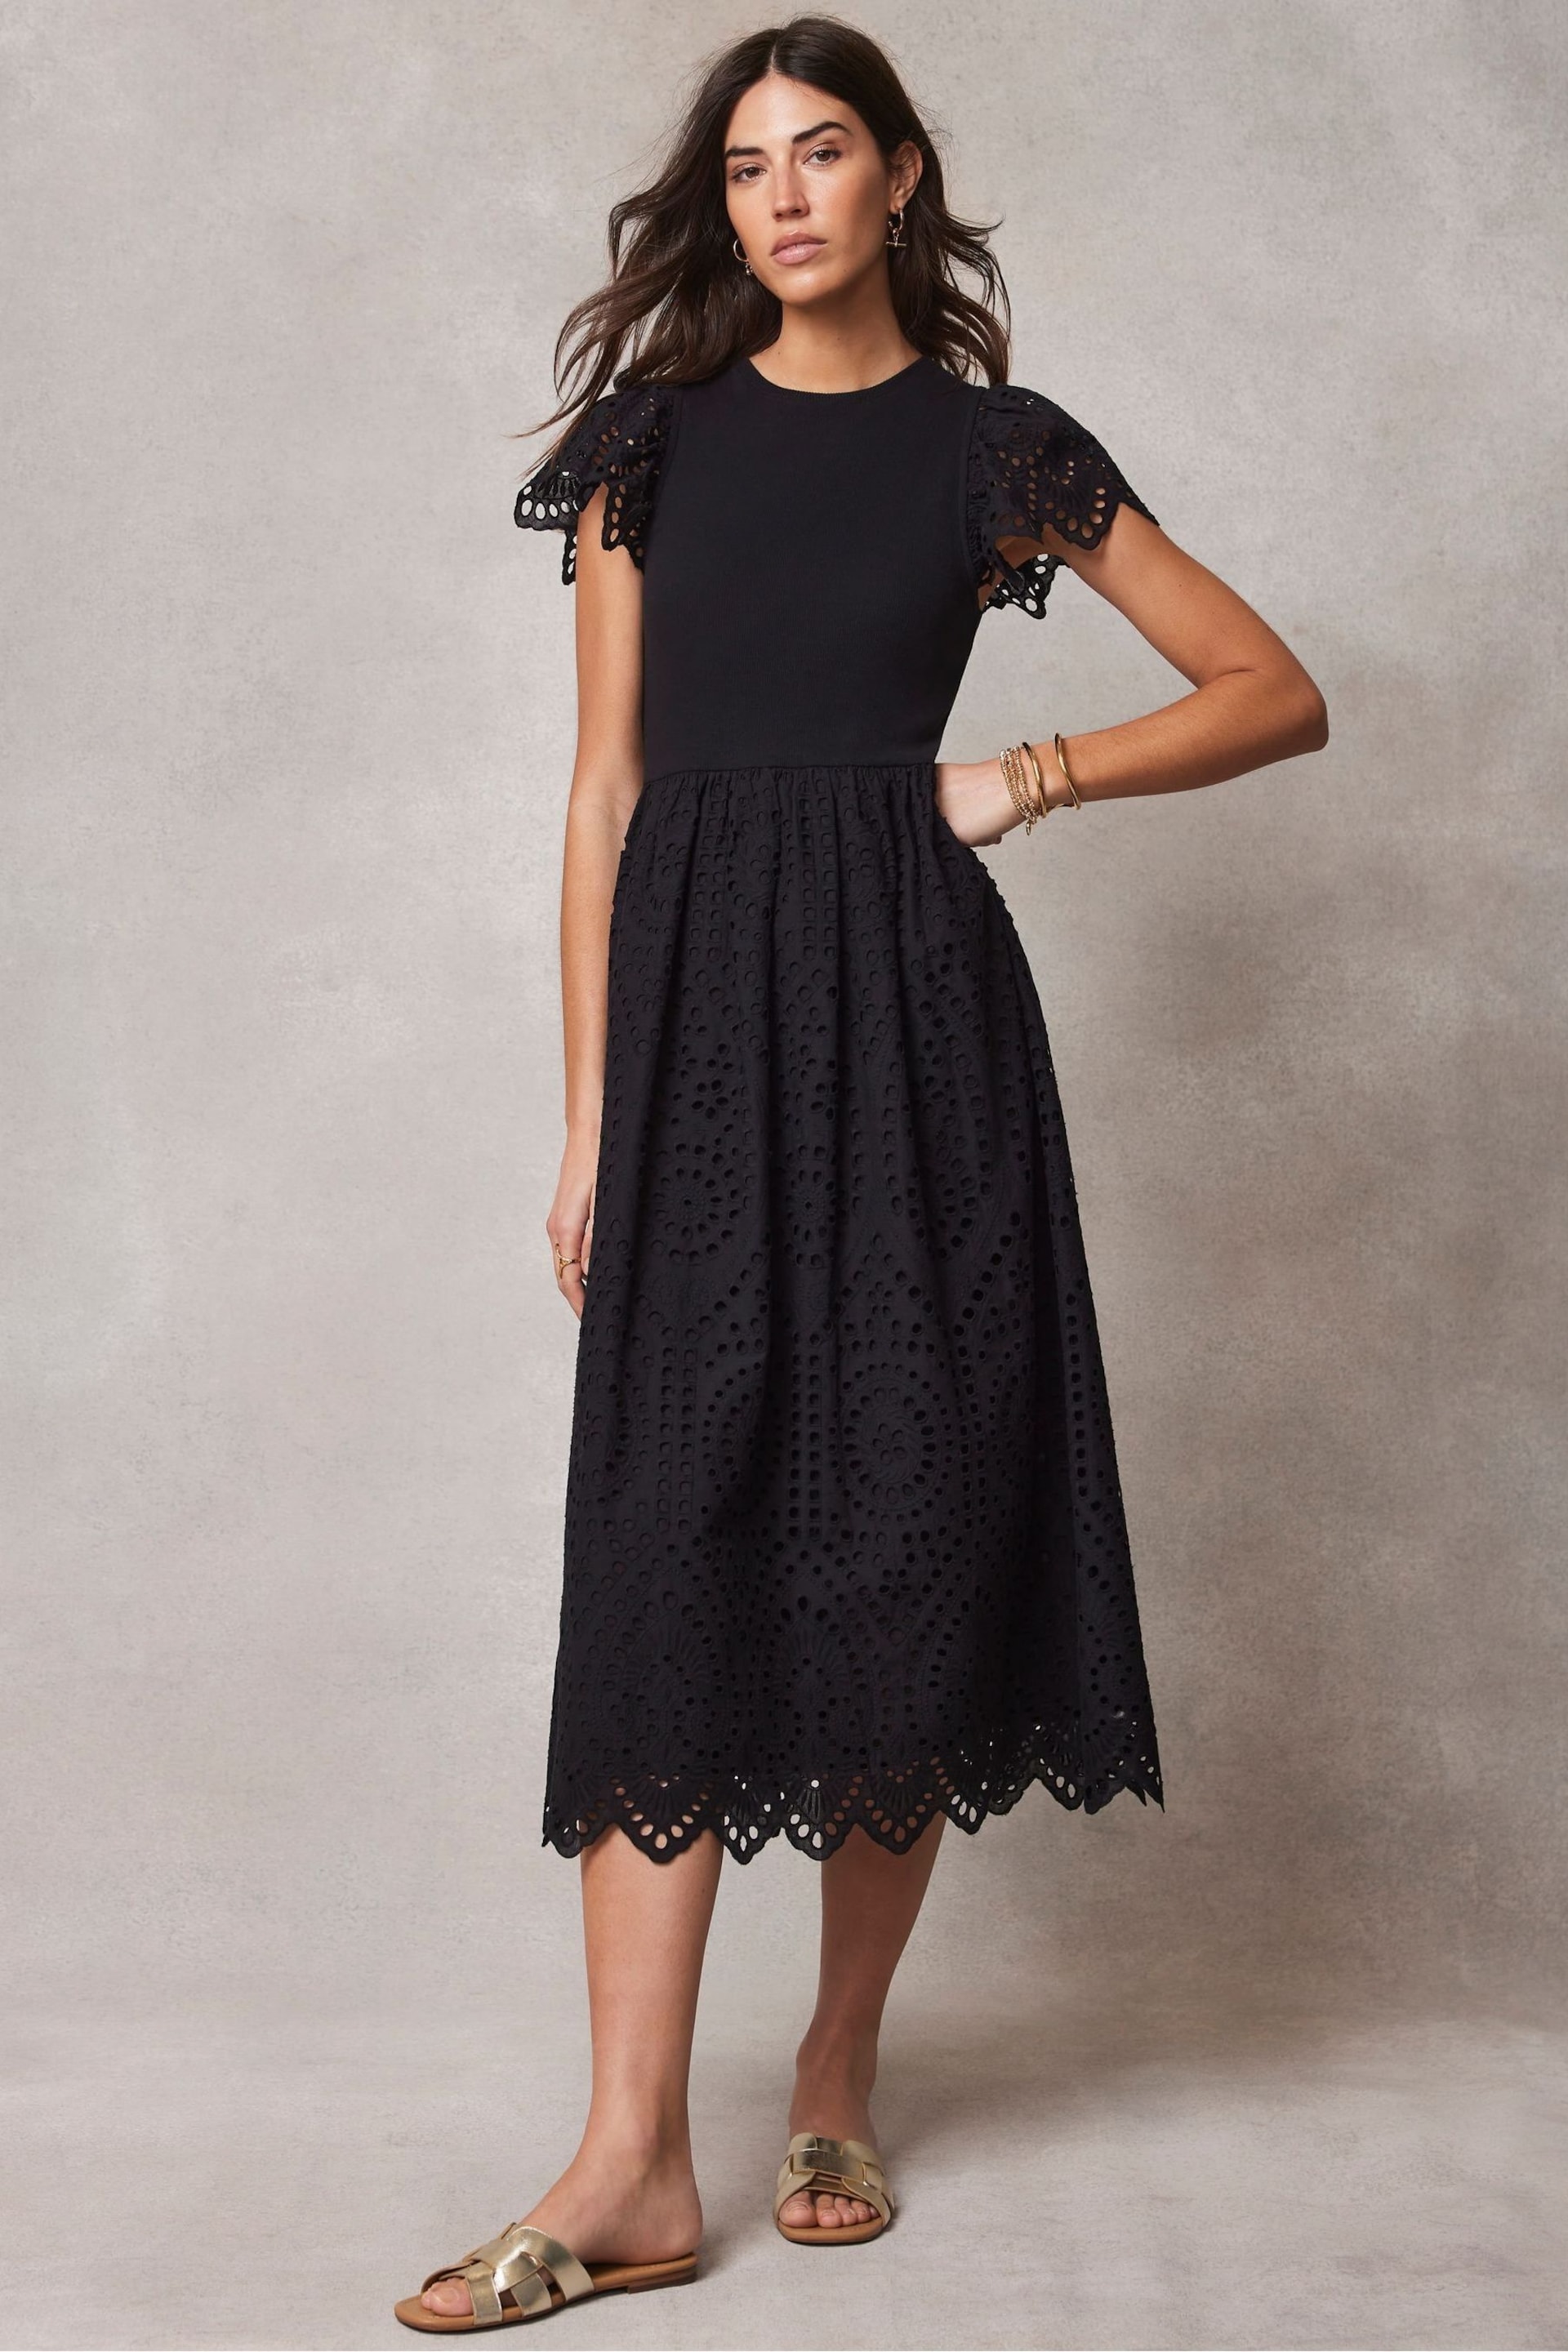 Mint Velvet Black Broderie Midi Dress - Image 1 of 4